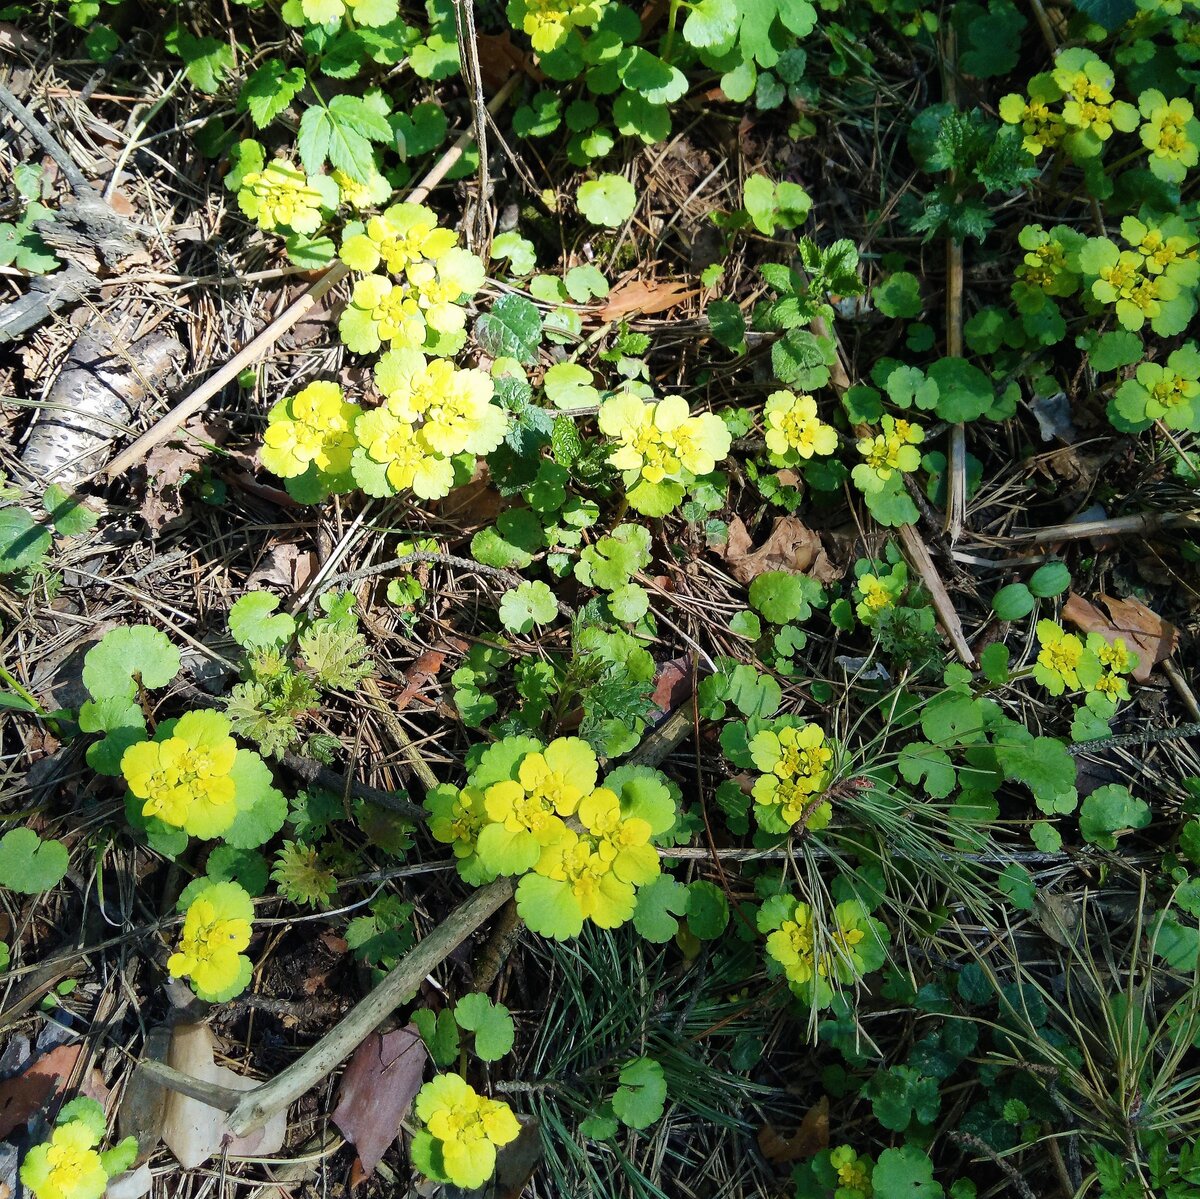 Растение с желтыми цветами в лесу